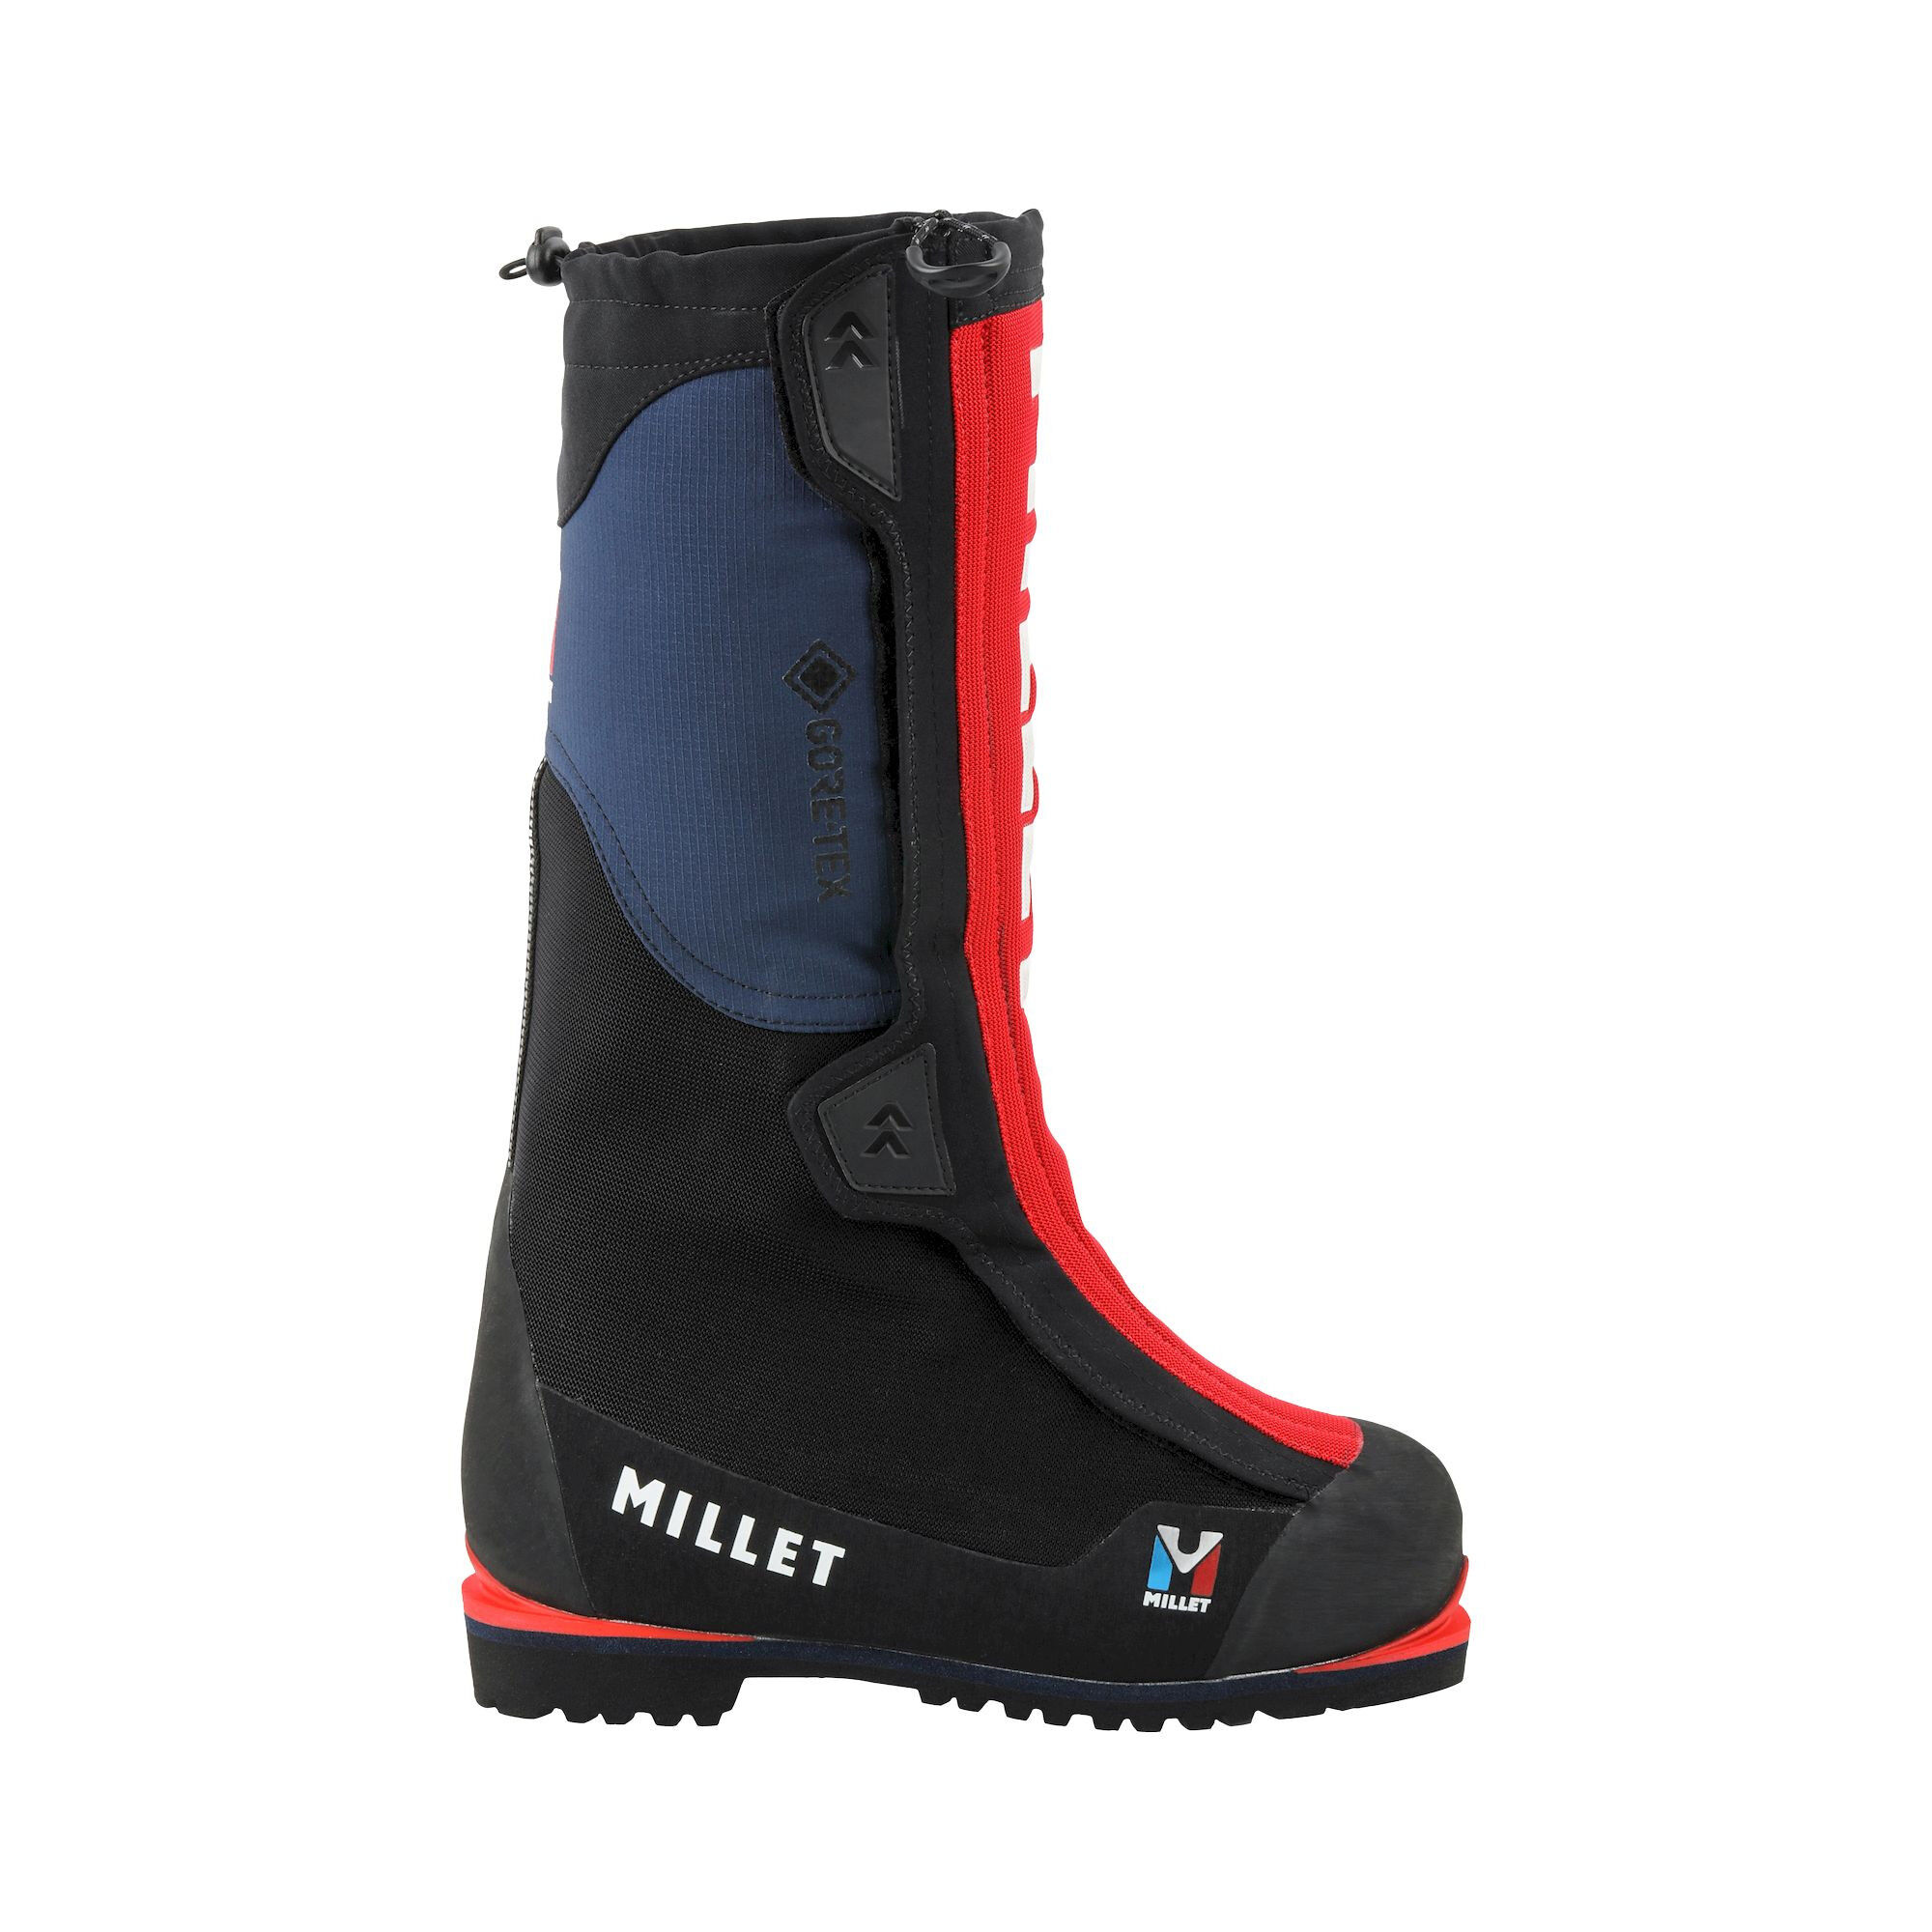 Millet - Everest Summit GTX - Mountaineering Boots